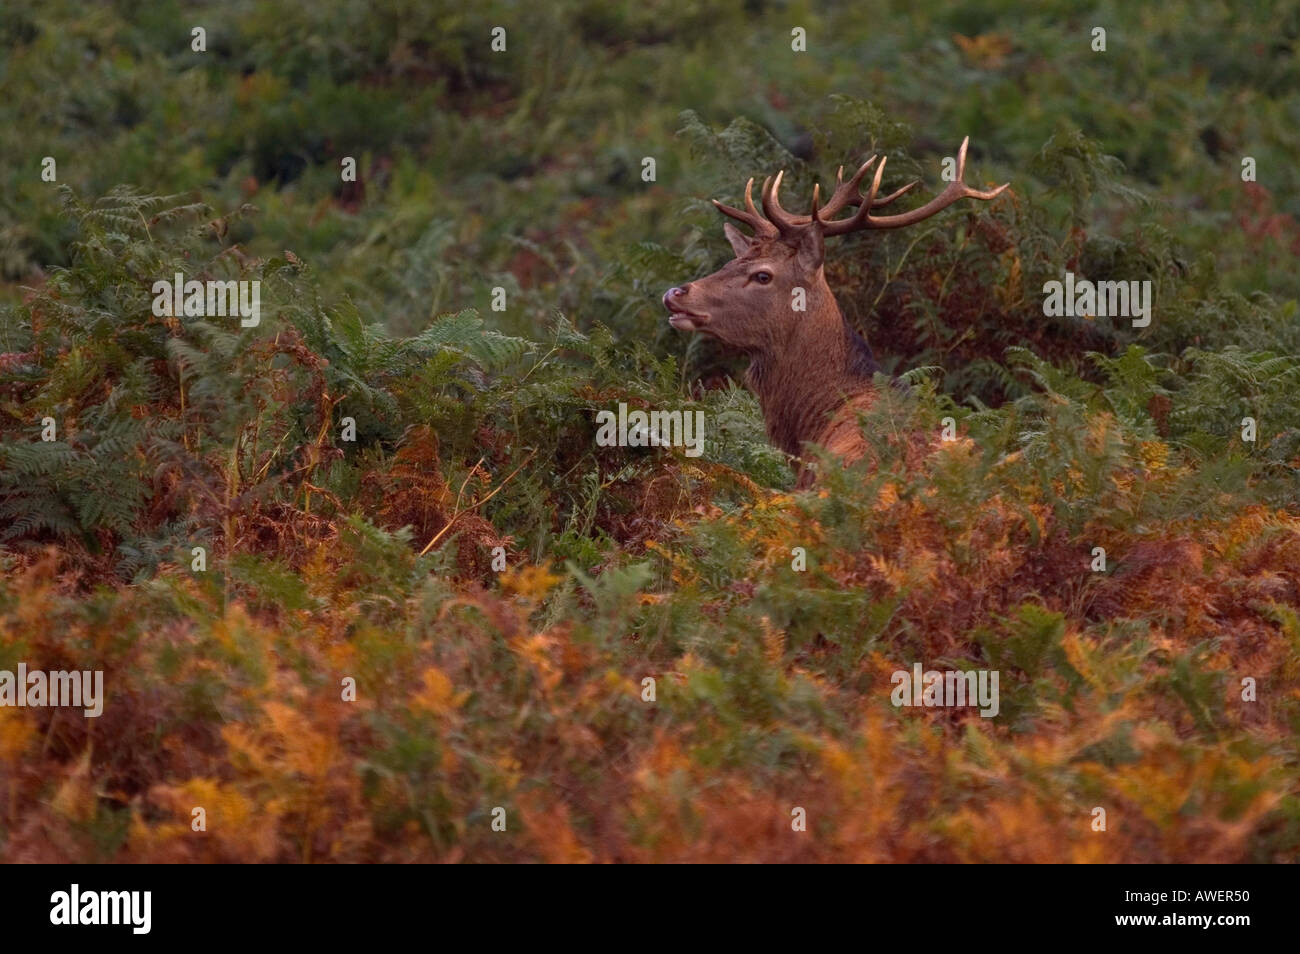 red deer stag Cervus elaphus in bracken autumn 2005 Stock Photo